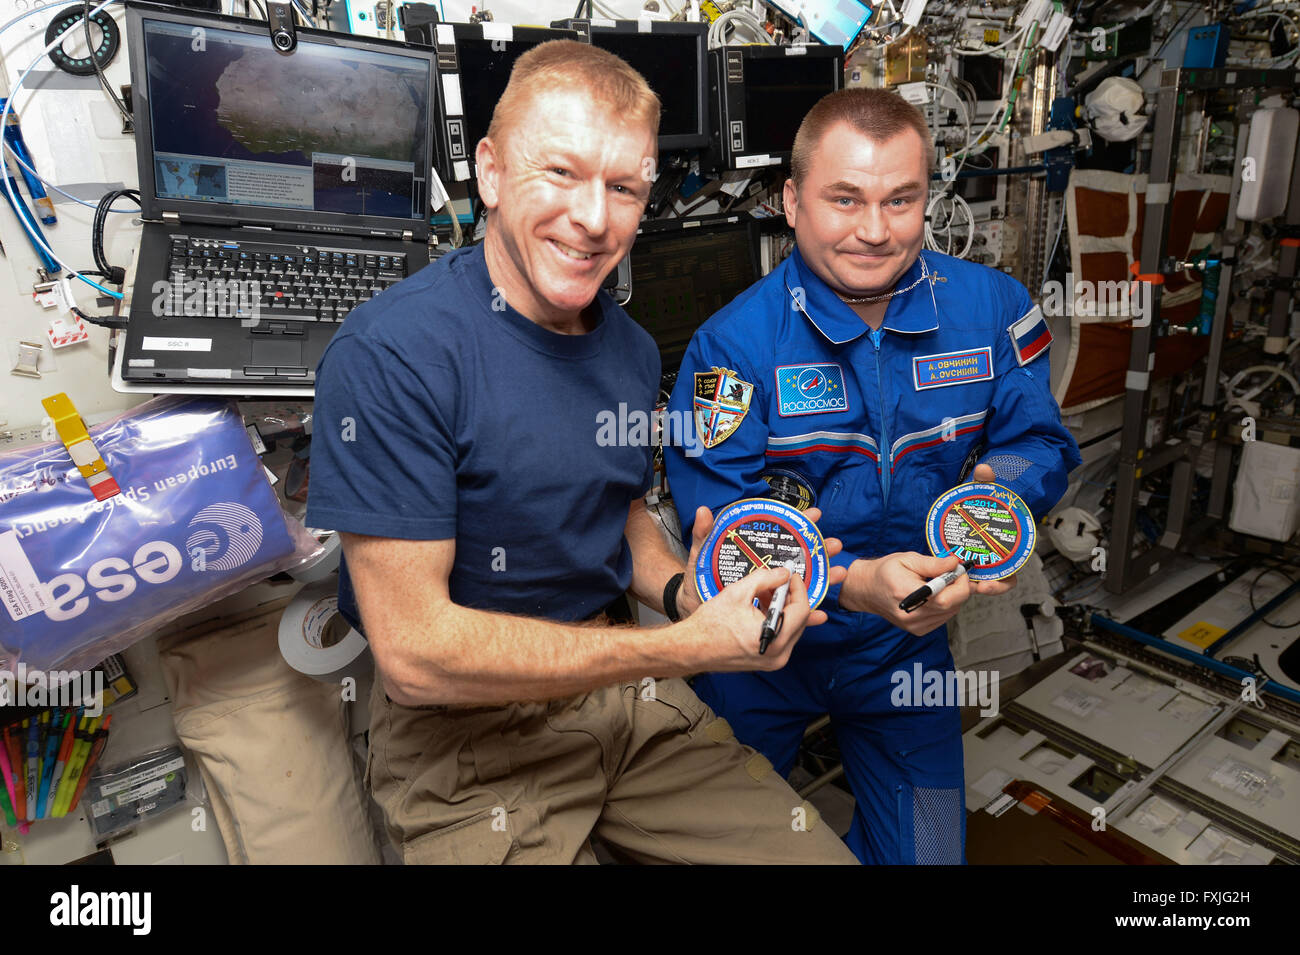 Estación Espacial Internacional la expedición 47 tripulantes astronauta británico Tim Peake, izquierda, y el cosmonauta ruso Alexey Ovchinin cruzar sus nombres fuera de la ceremonia de la "Liga de los astronautas Unflown' parche 9 de abril de 2016 en la órbita de la tierra. Ambos se encuentran en su primer vuelo espacial y la 221st y 222ª personas para visitar la Estación Espacial Internacional desde su creación. Foto de stock